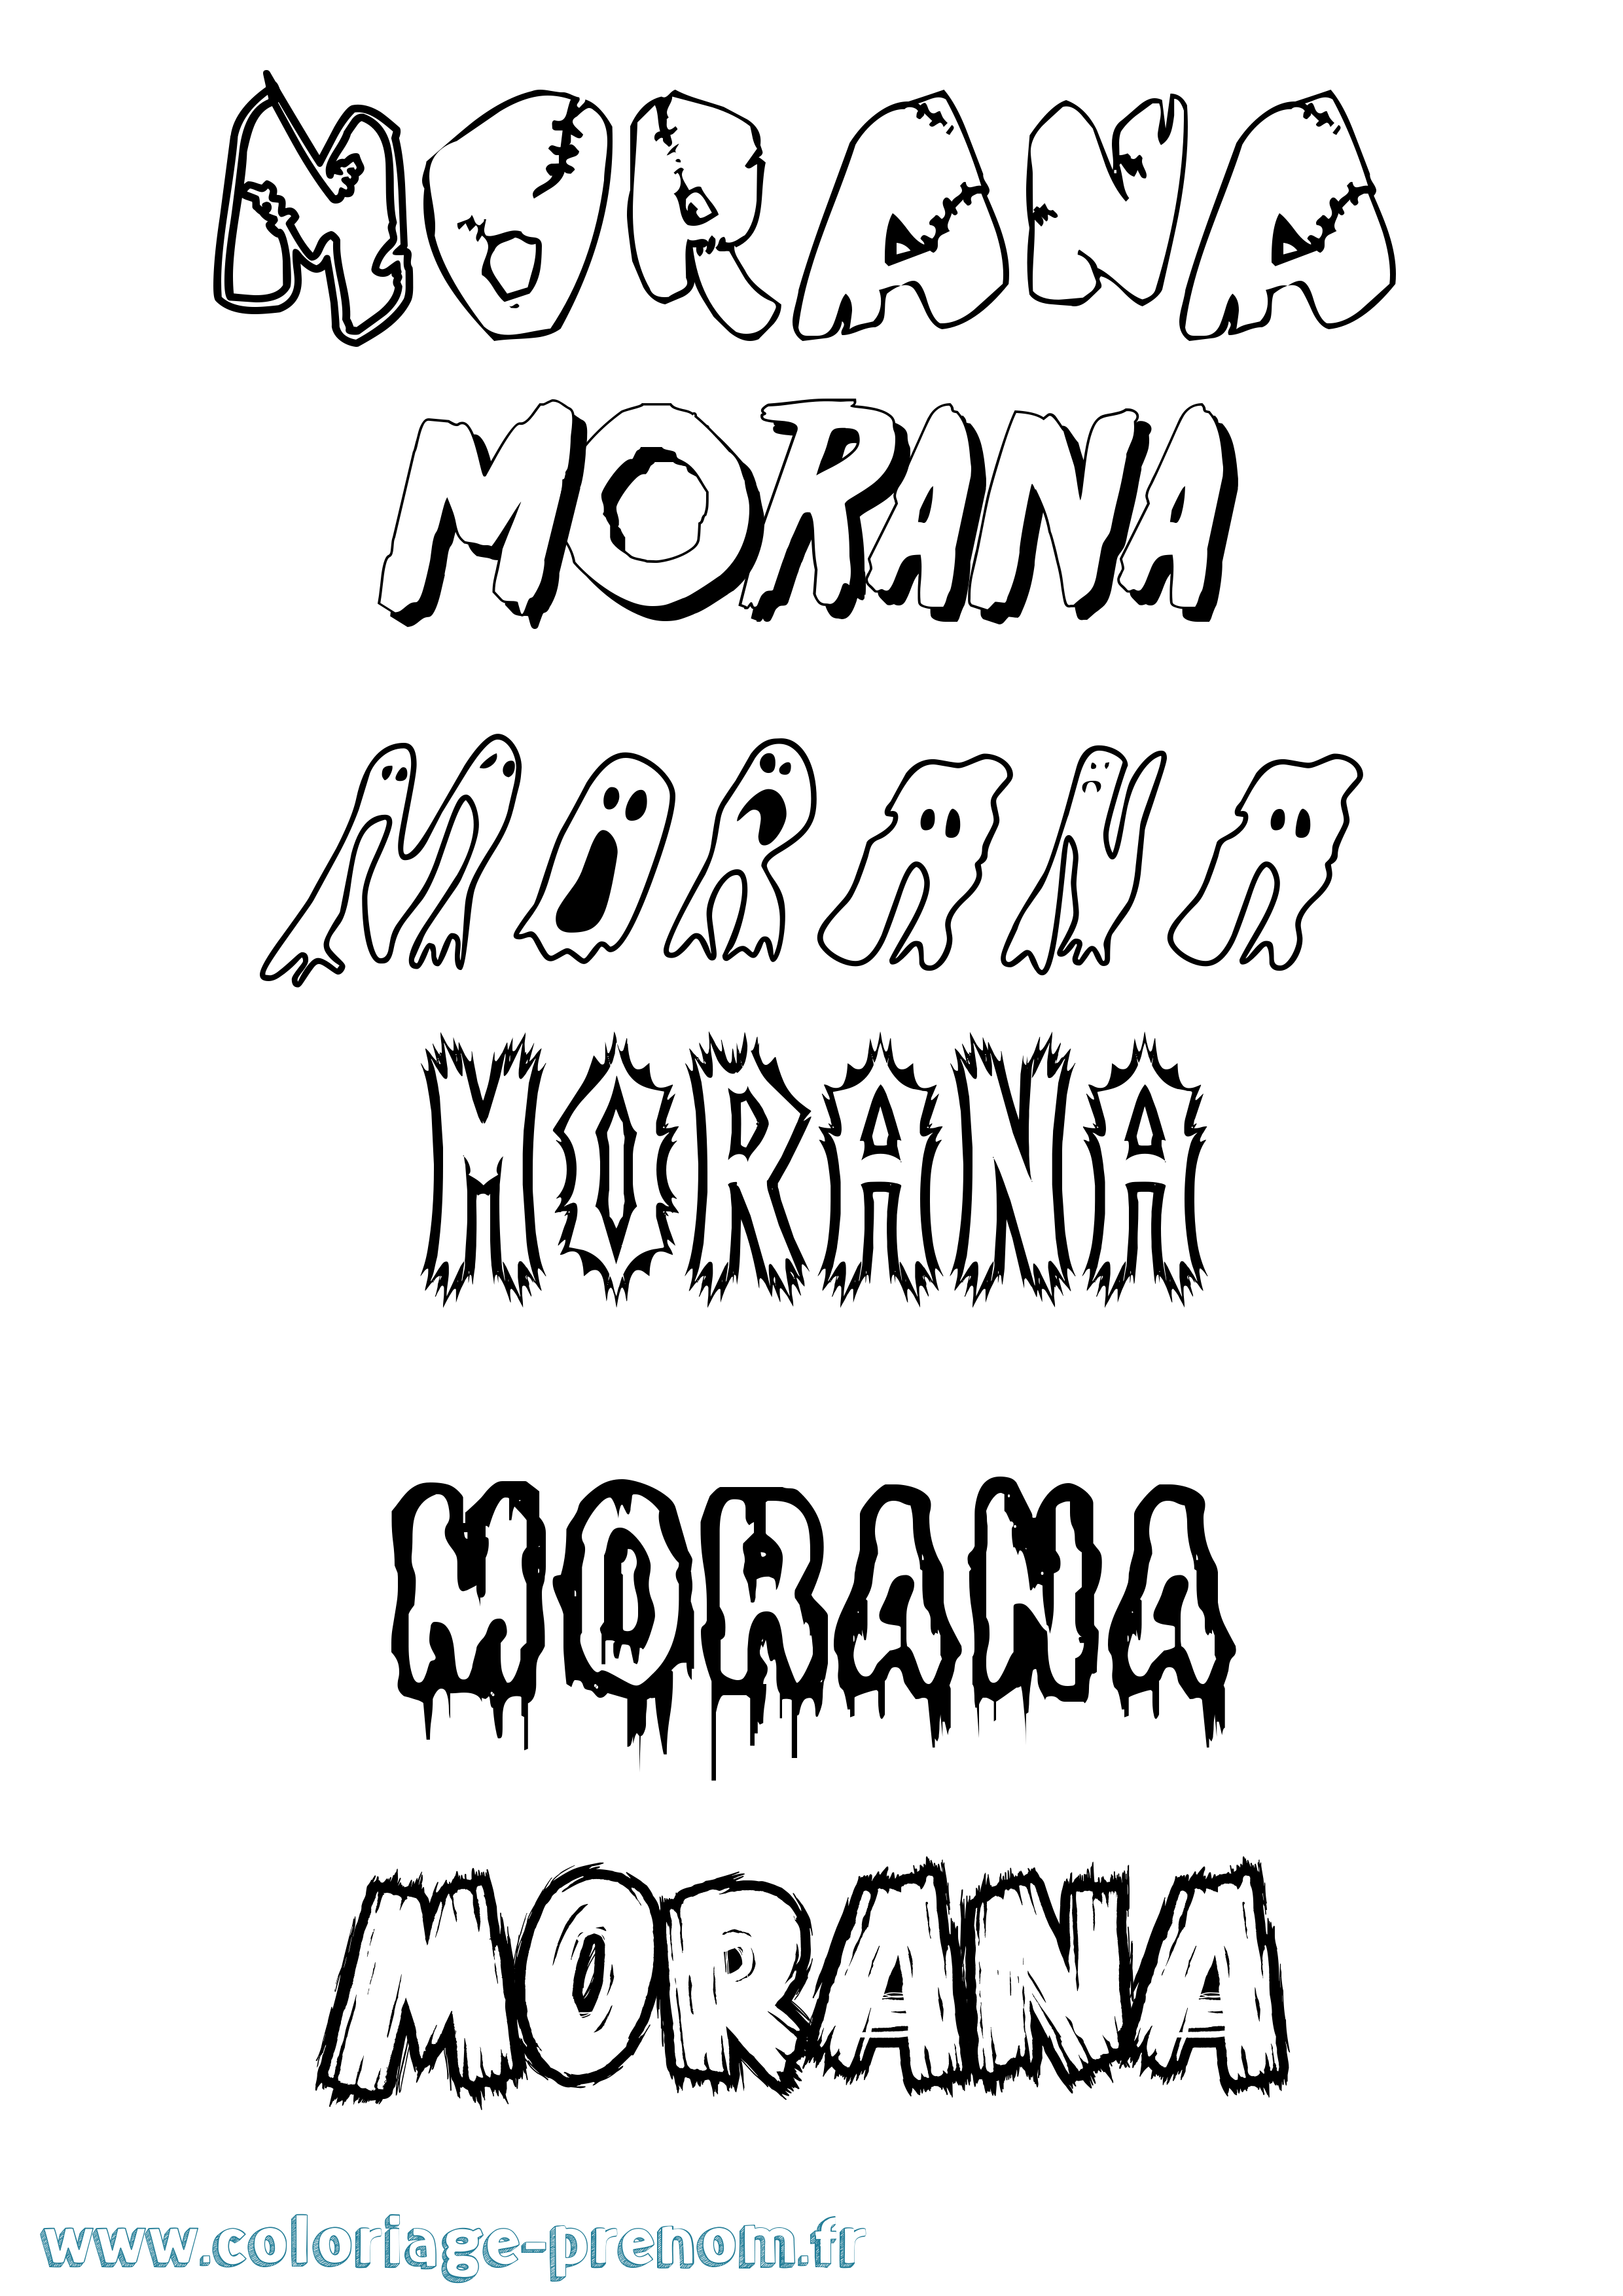 Coloriage prénom Morana Frisson